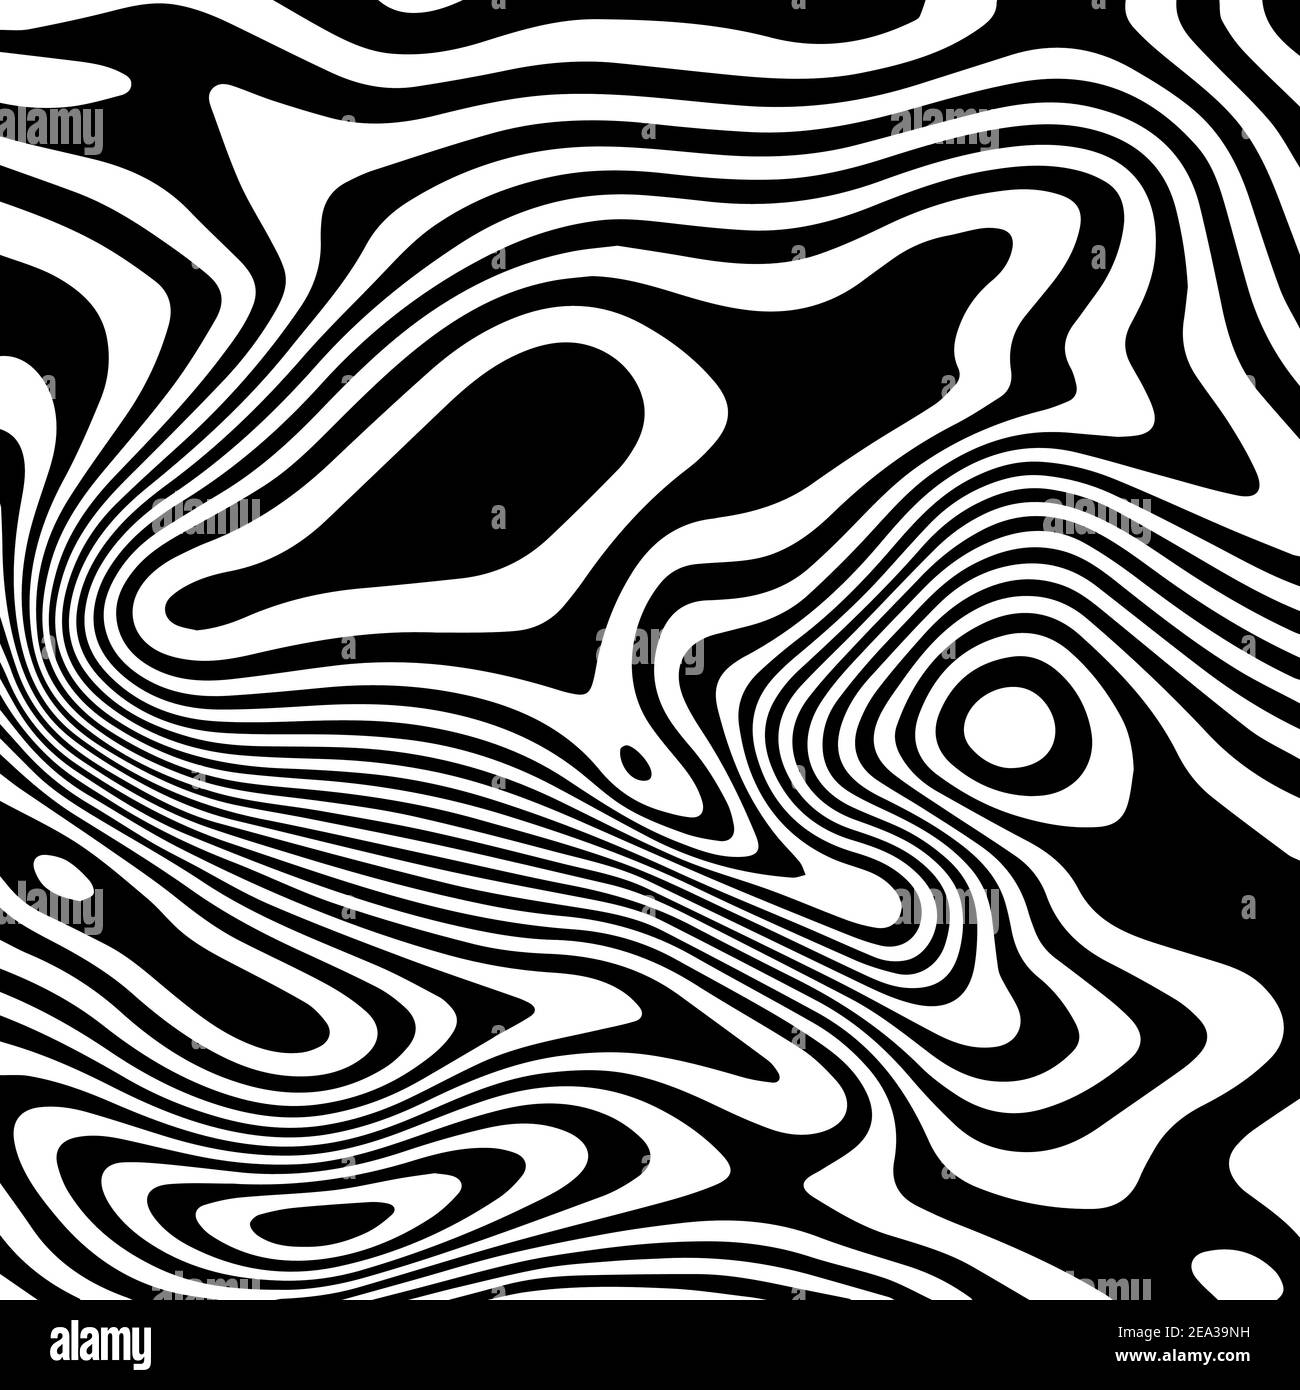 Motif vectoriel monochrome, lignes courbes, arrière-plan rayé noir et blanc. Texture ondulée dynamique abstraite, effet visuel 3D Illustration de Vecteur